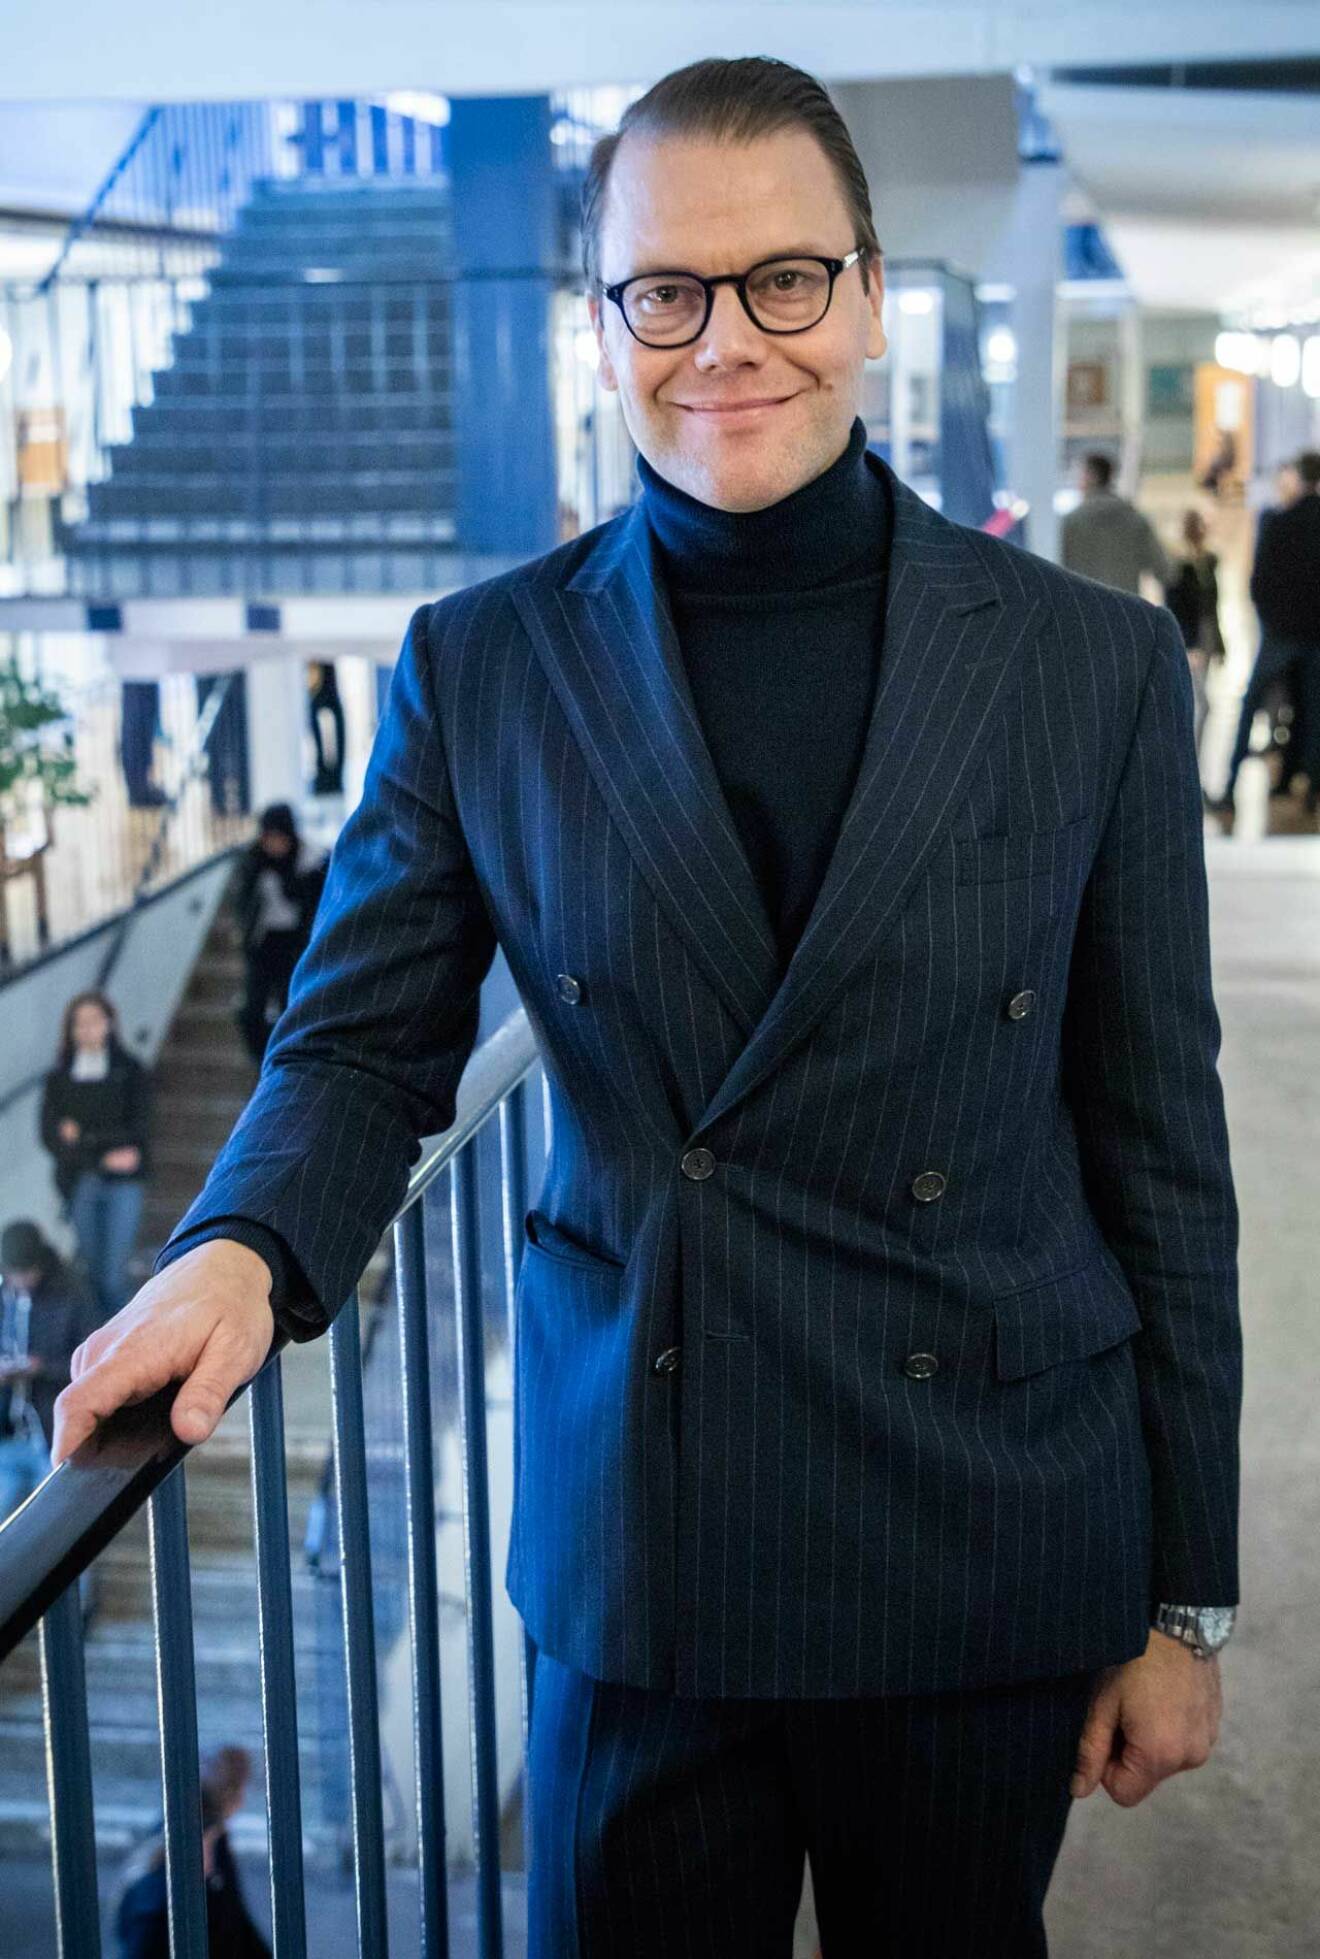 Sveriges entreprenörsprins: Prins Daniel i dubbelknäppt kostym och polotröja.